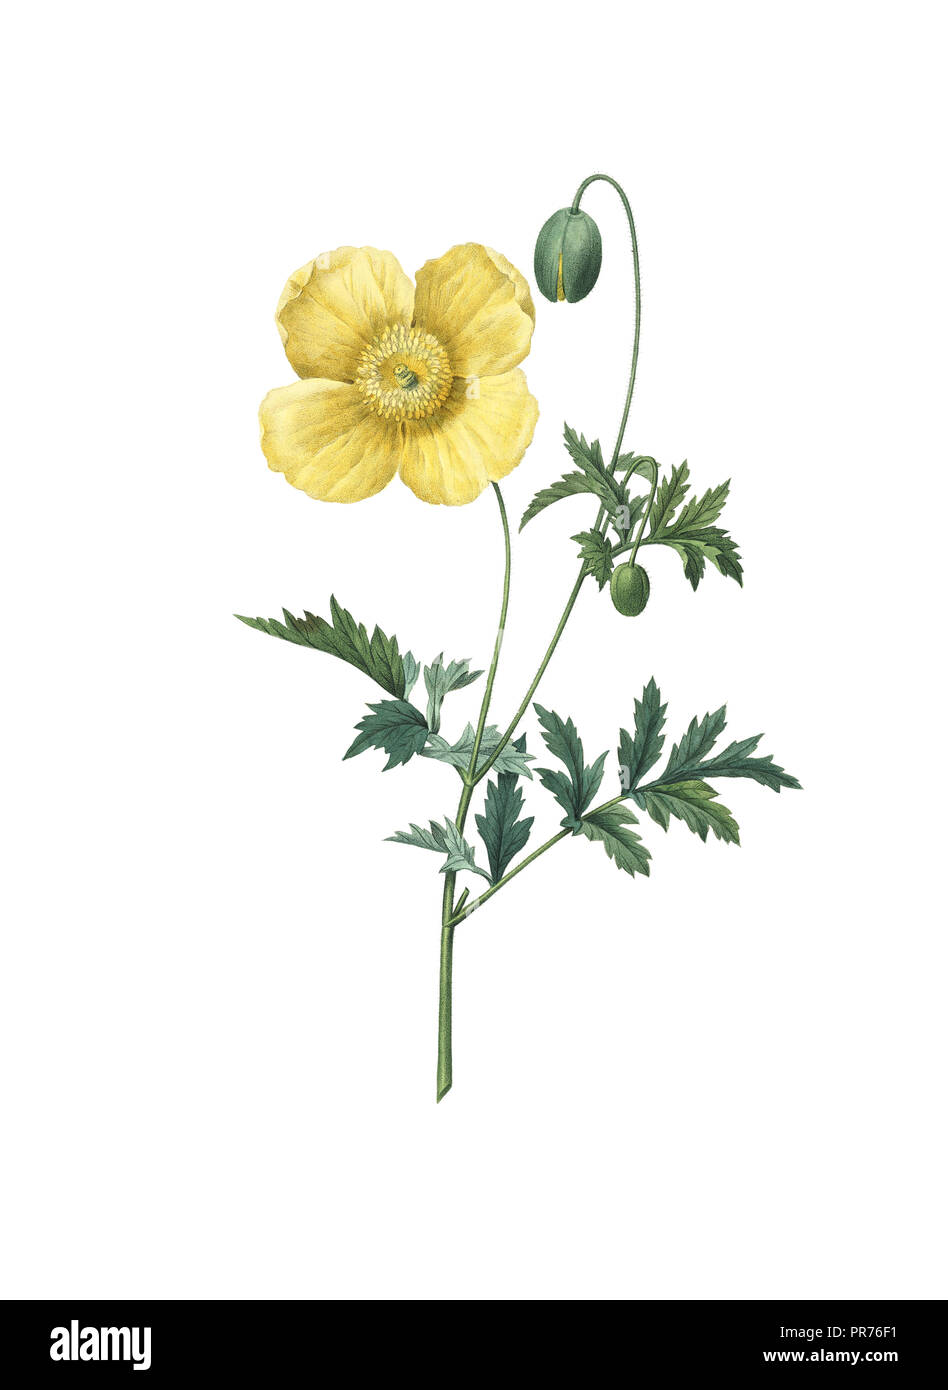 19ème siècle Illustration d'un pavot jaune. Gravure par Pierre-Joseph Redoute. Publié dans Choix des Plus Belles fleurs, Paris (1827). Banque D'Images